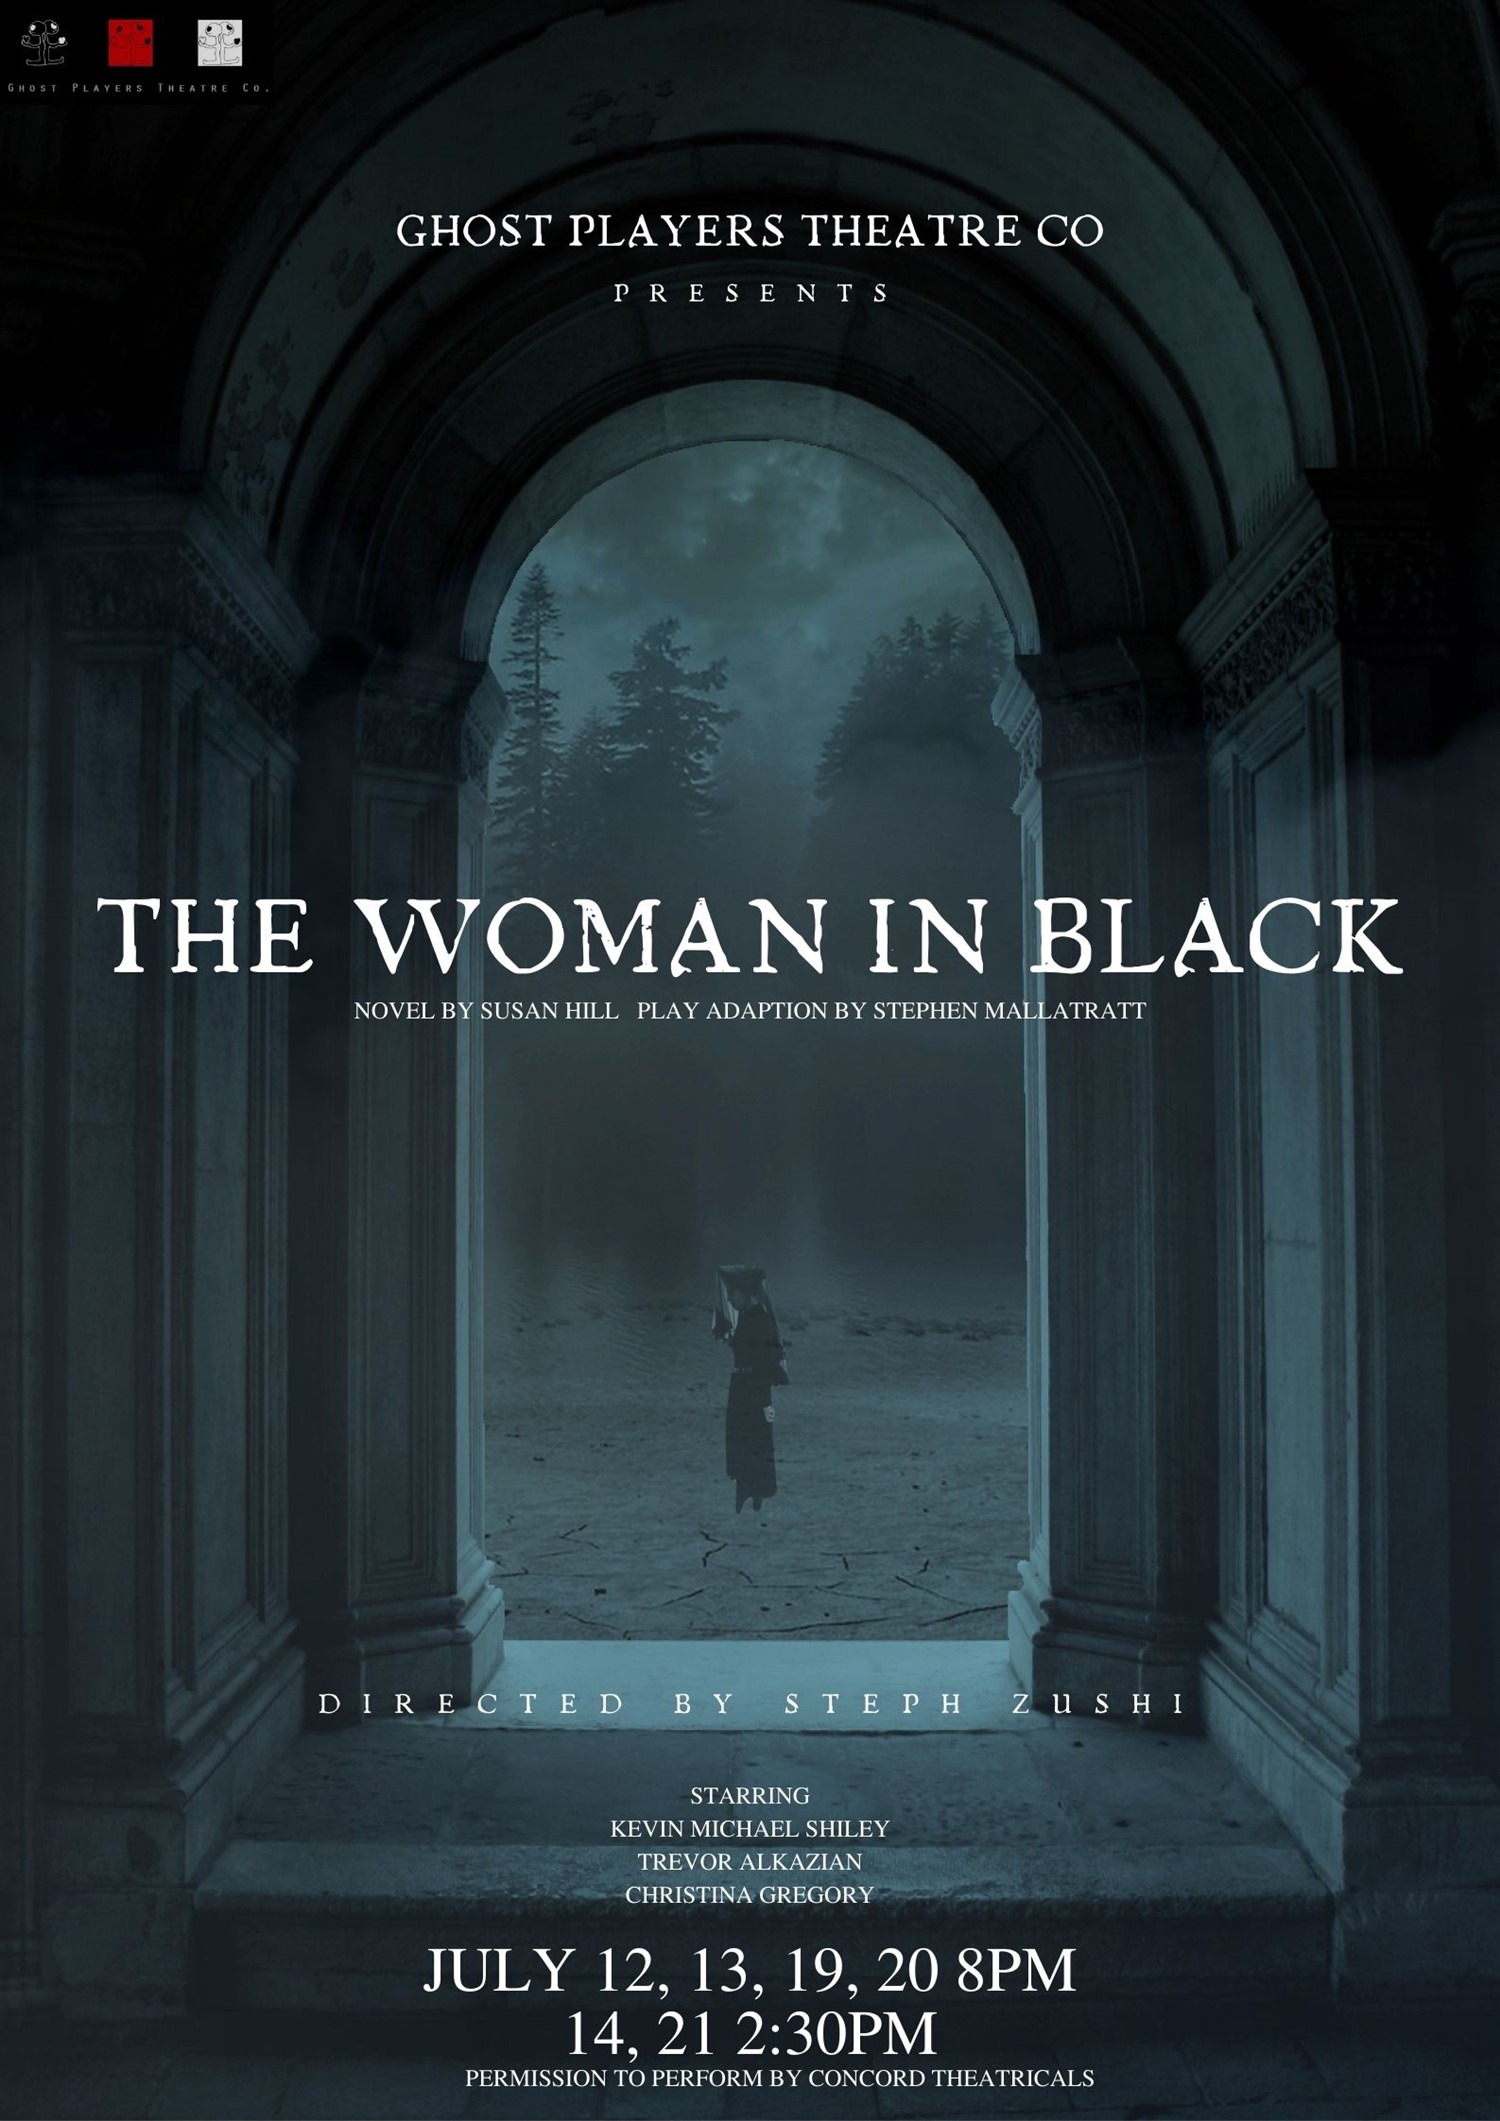 THE WOMAN IN BLACK Presented by Ghost Players Theatre Co. on jul. 23, 00:00@Alemany Theater - Elegir asientoCompra entradas y obtén información enGHOST PLAYERS THEATRE CO 